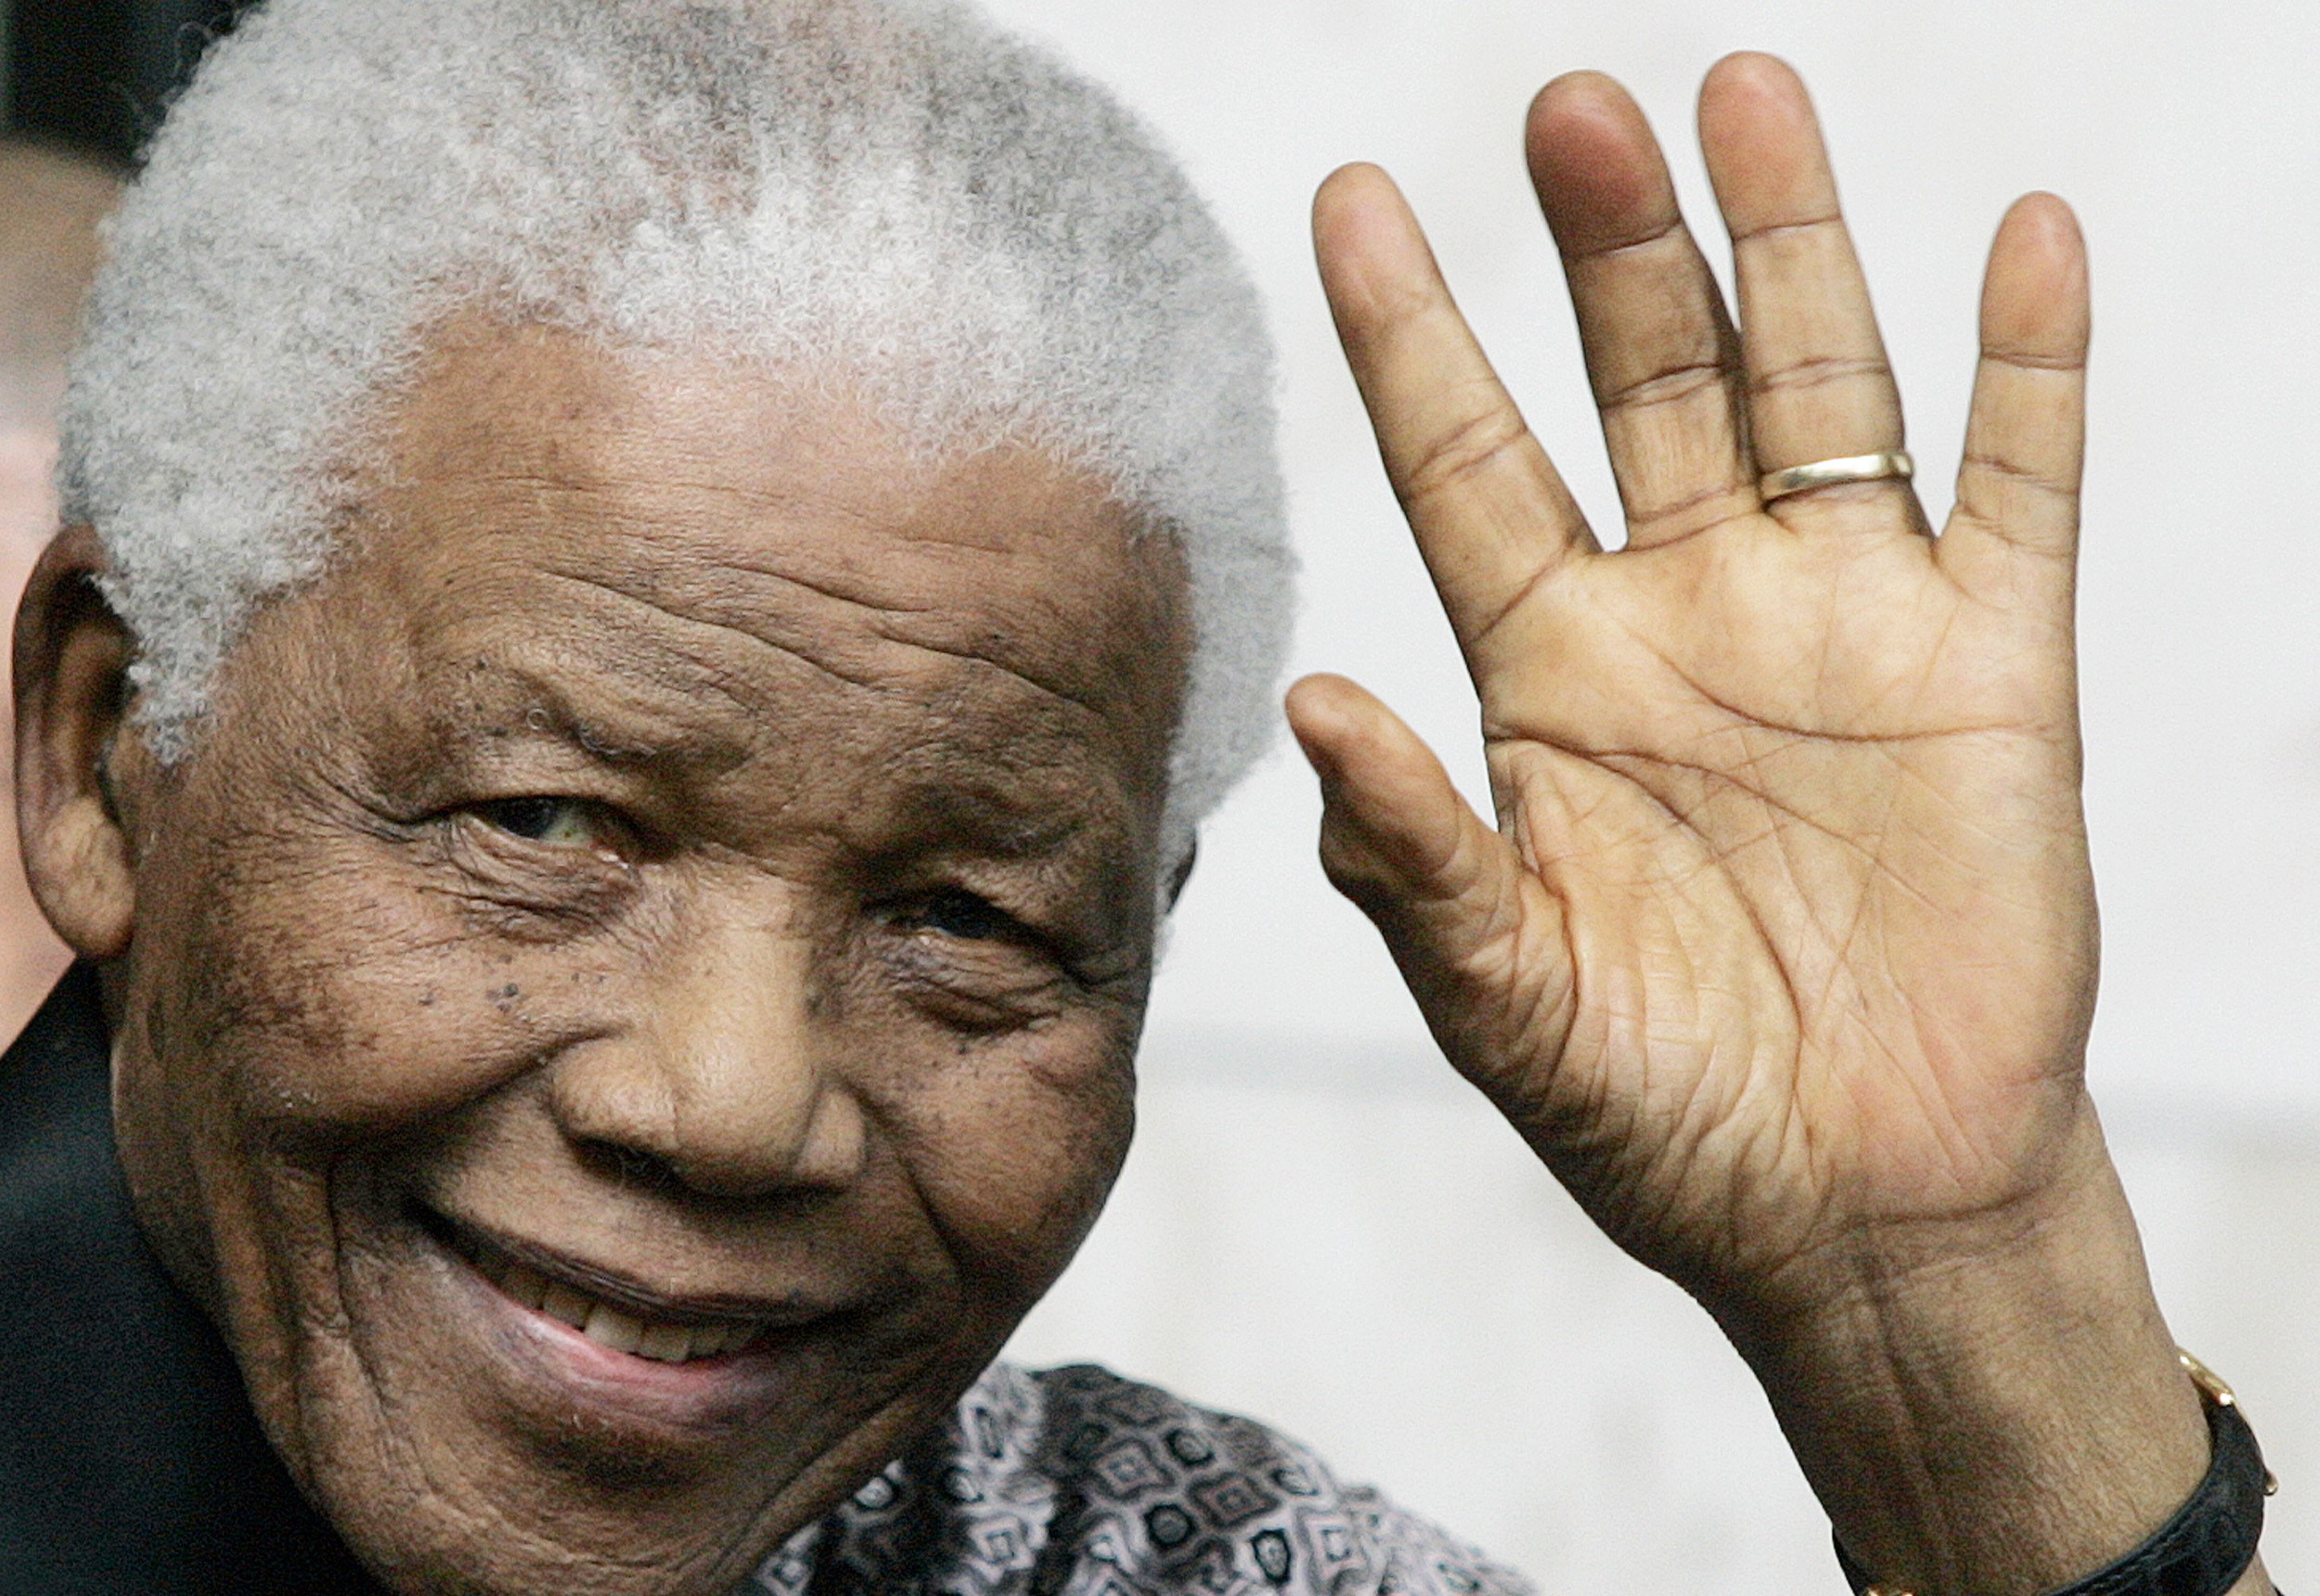 Sau khi hết nhiệm kỳ, Nelson Mandela tiếp tục tham gia vào các tổ chức xã hội và Nelson Mandela qua đời vào ngày 5/12/2013 do bệnh nhiễm trùng phổi